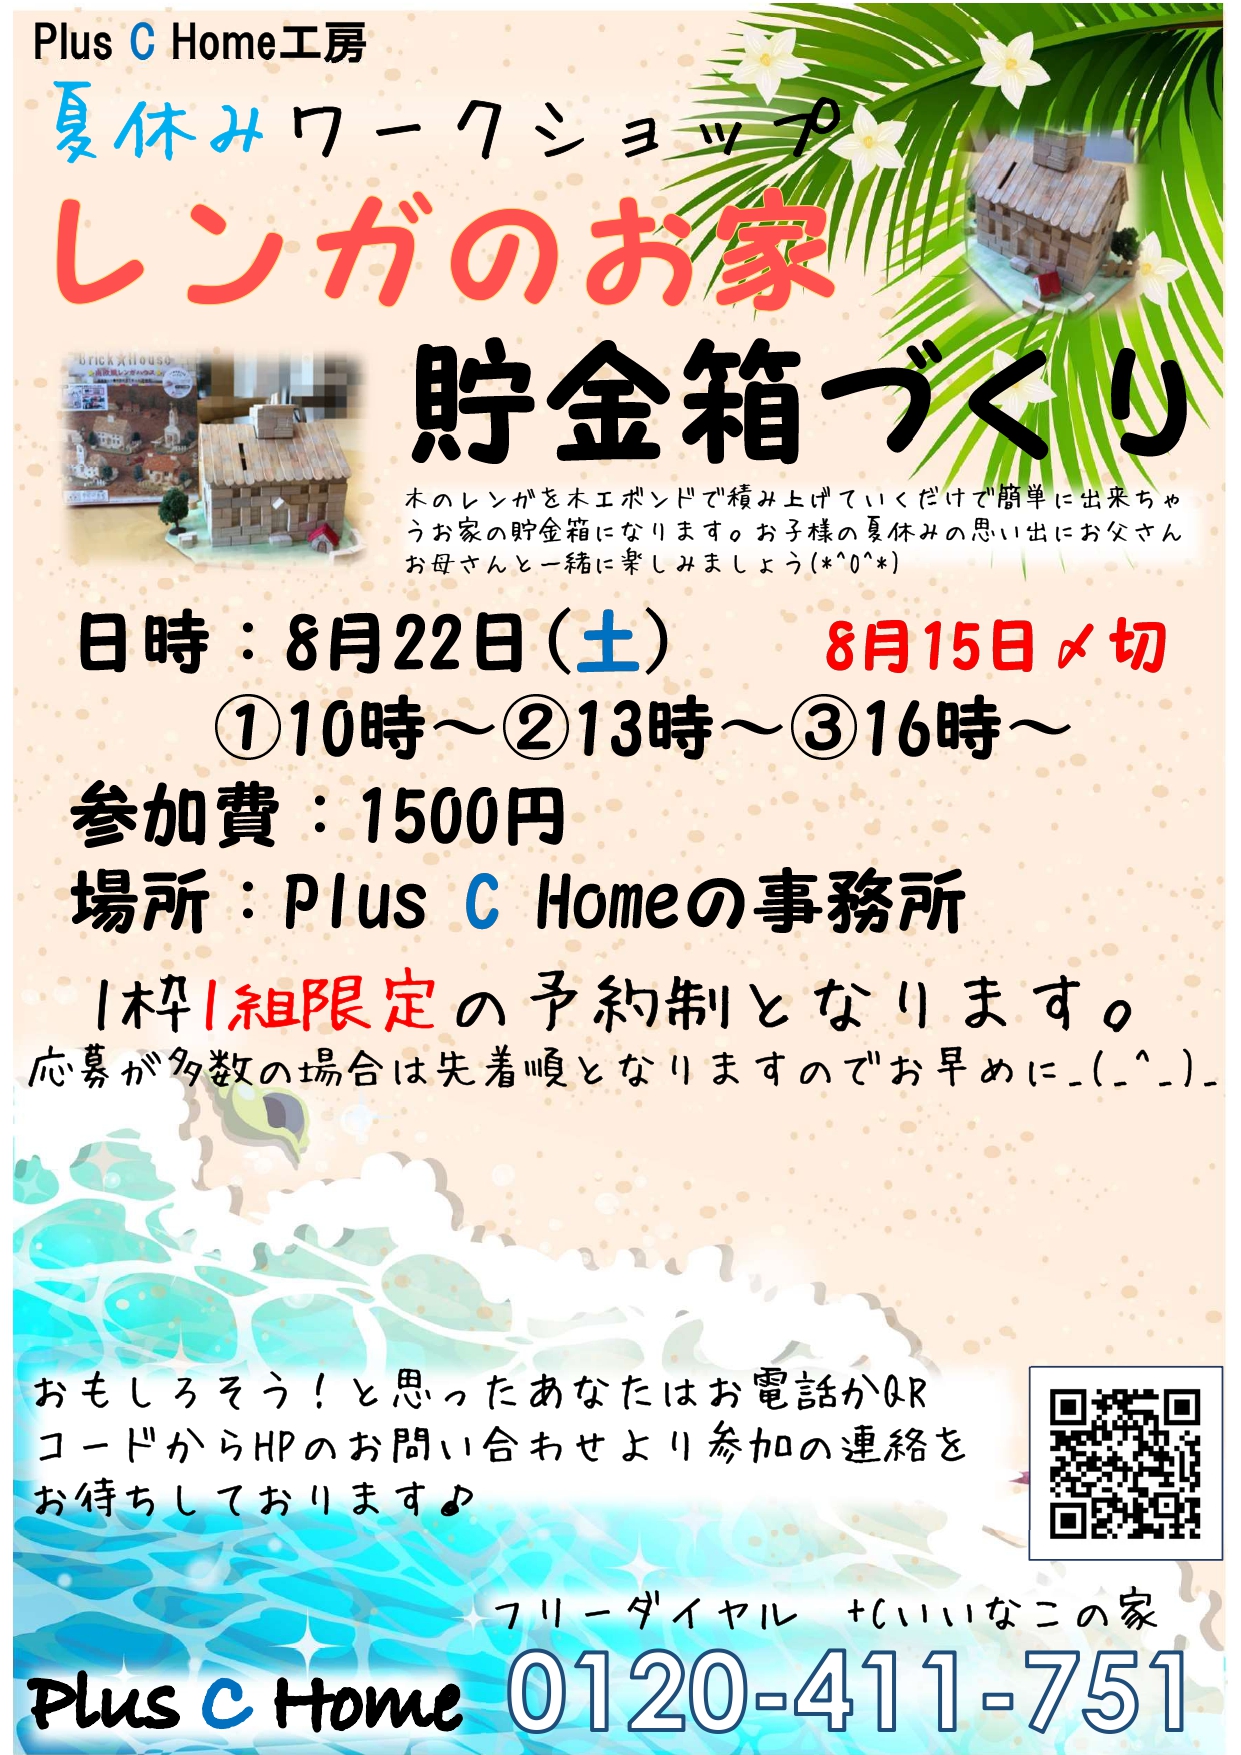 高気密・高断熱住宅を扱う大阪市内の工務店Plus C Homeが夏休みワークショップを開催♪